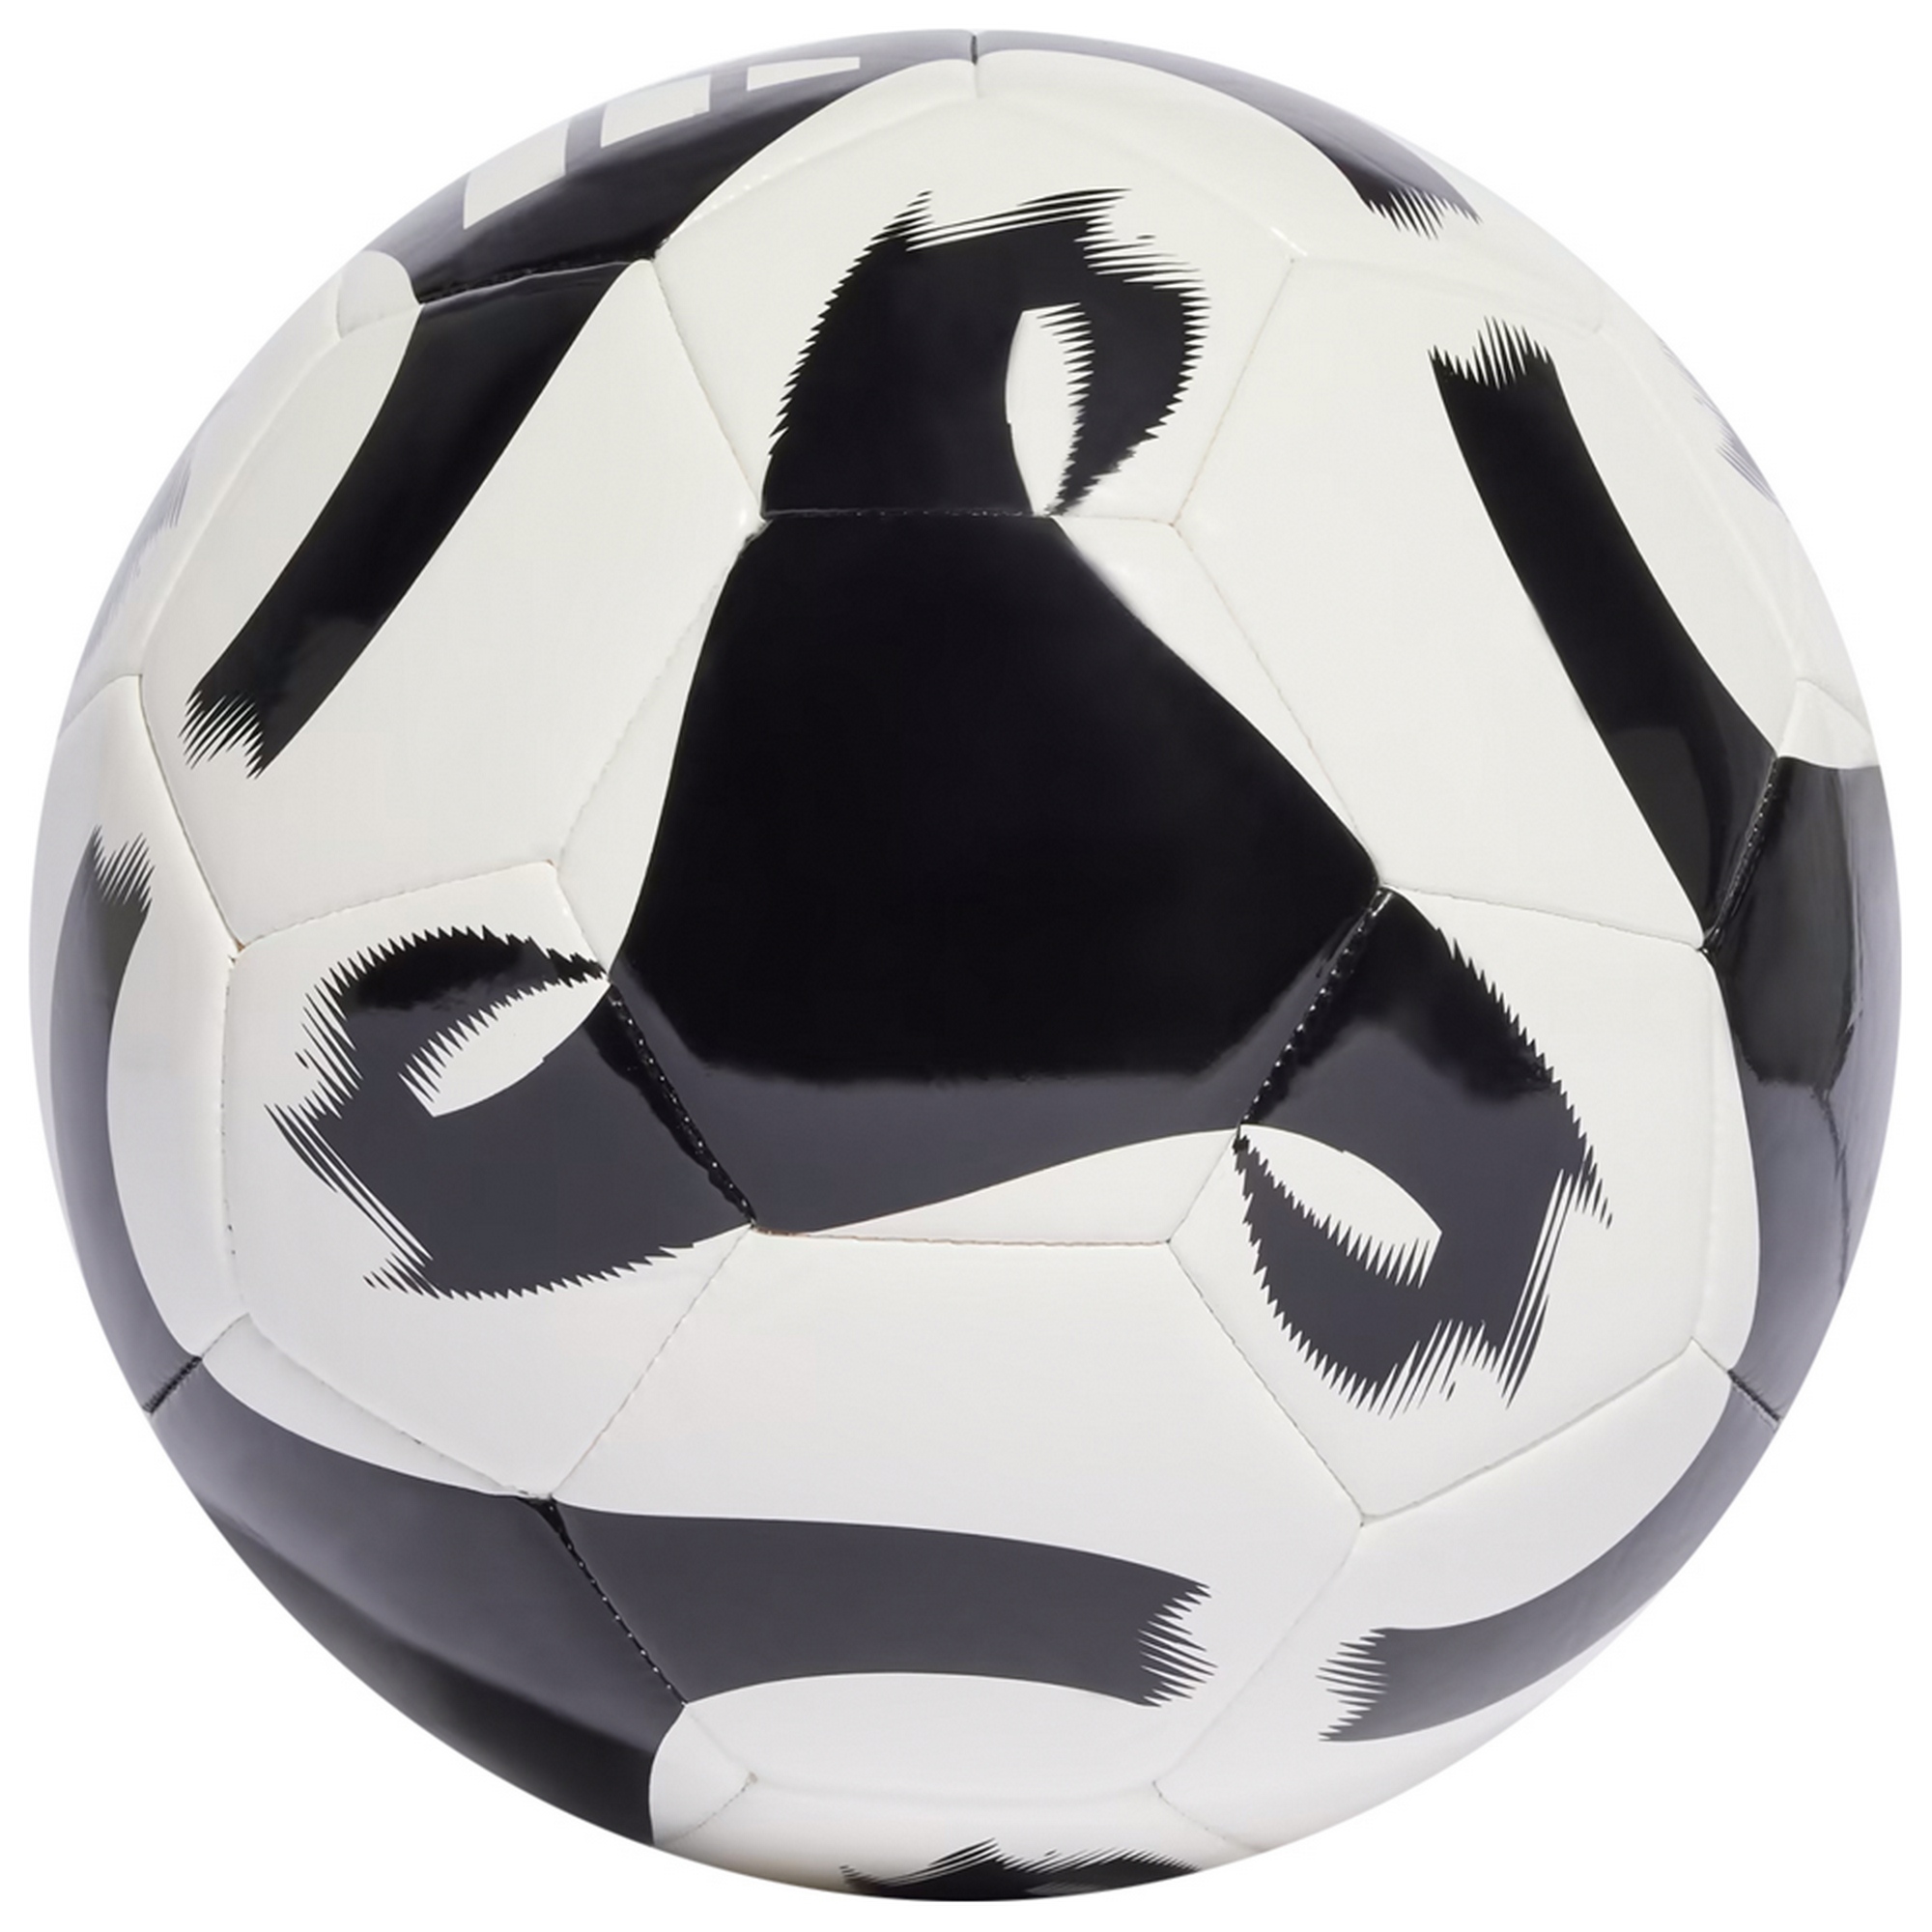 Мяч футбольный Adidas Tiro Club HT2430 р.4 2000_2000